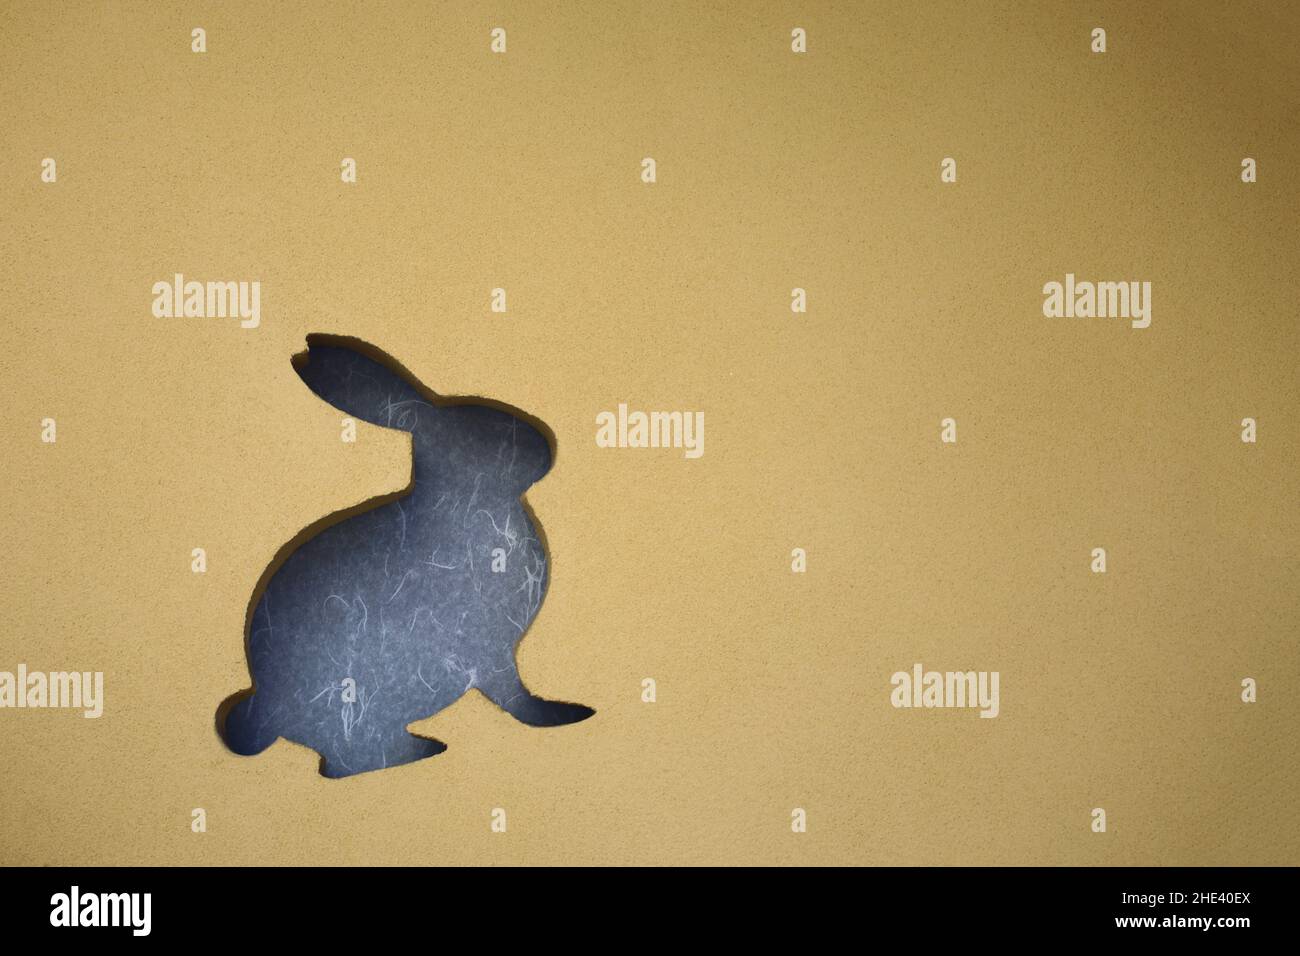 Paroi de terre diatomée avec une silhouette de lapin estampée Banque D'Images